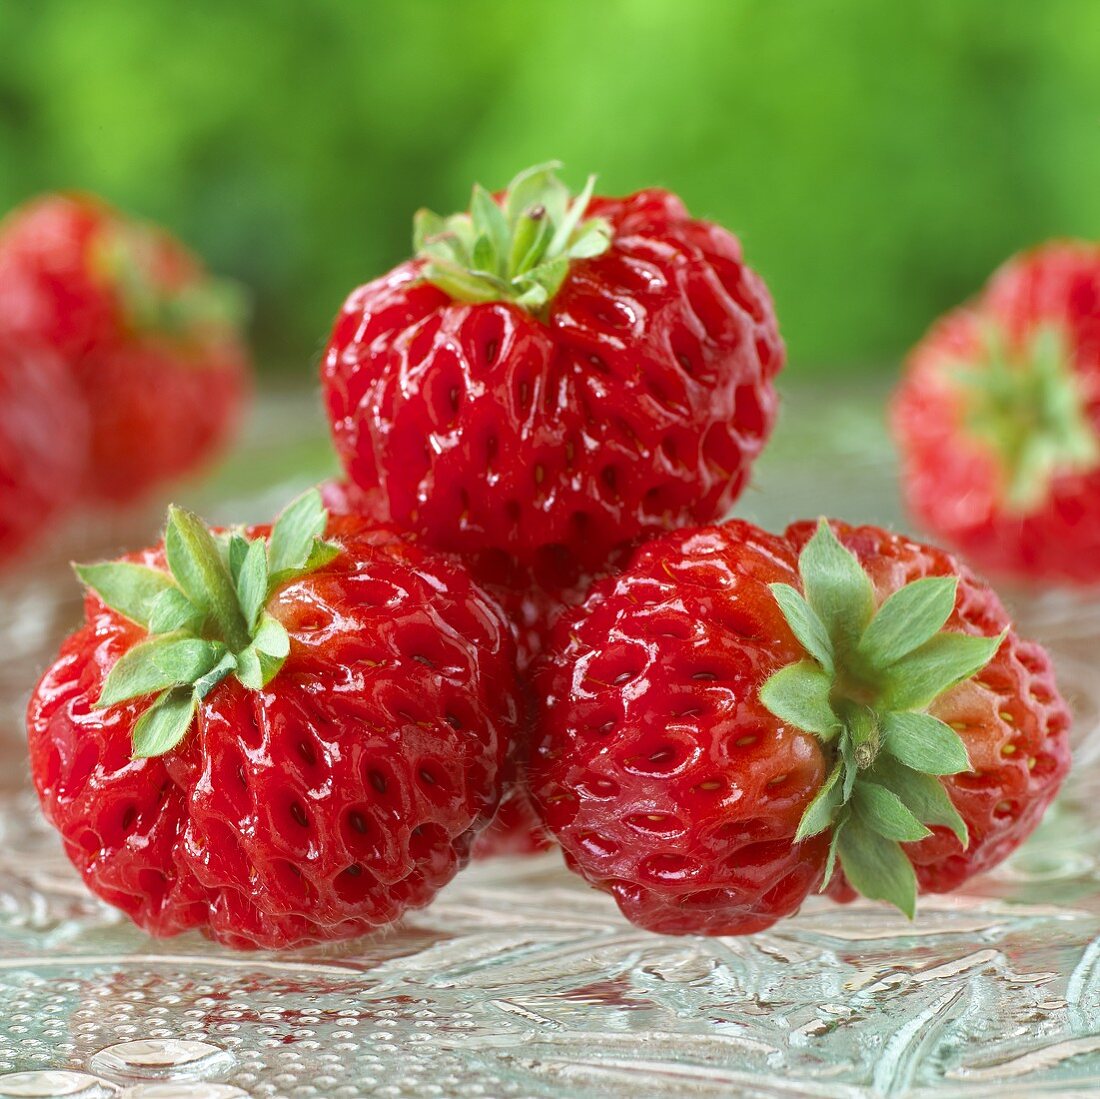 'Framberry' strawberries